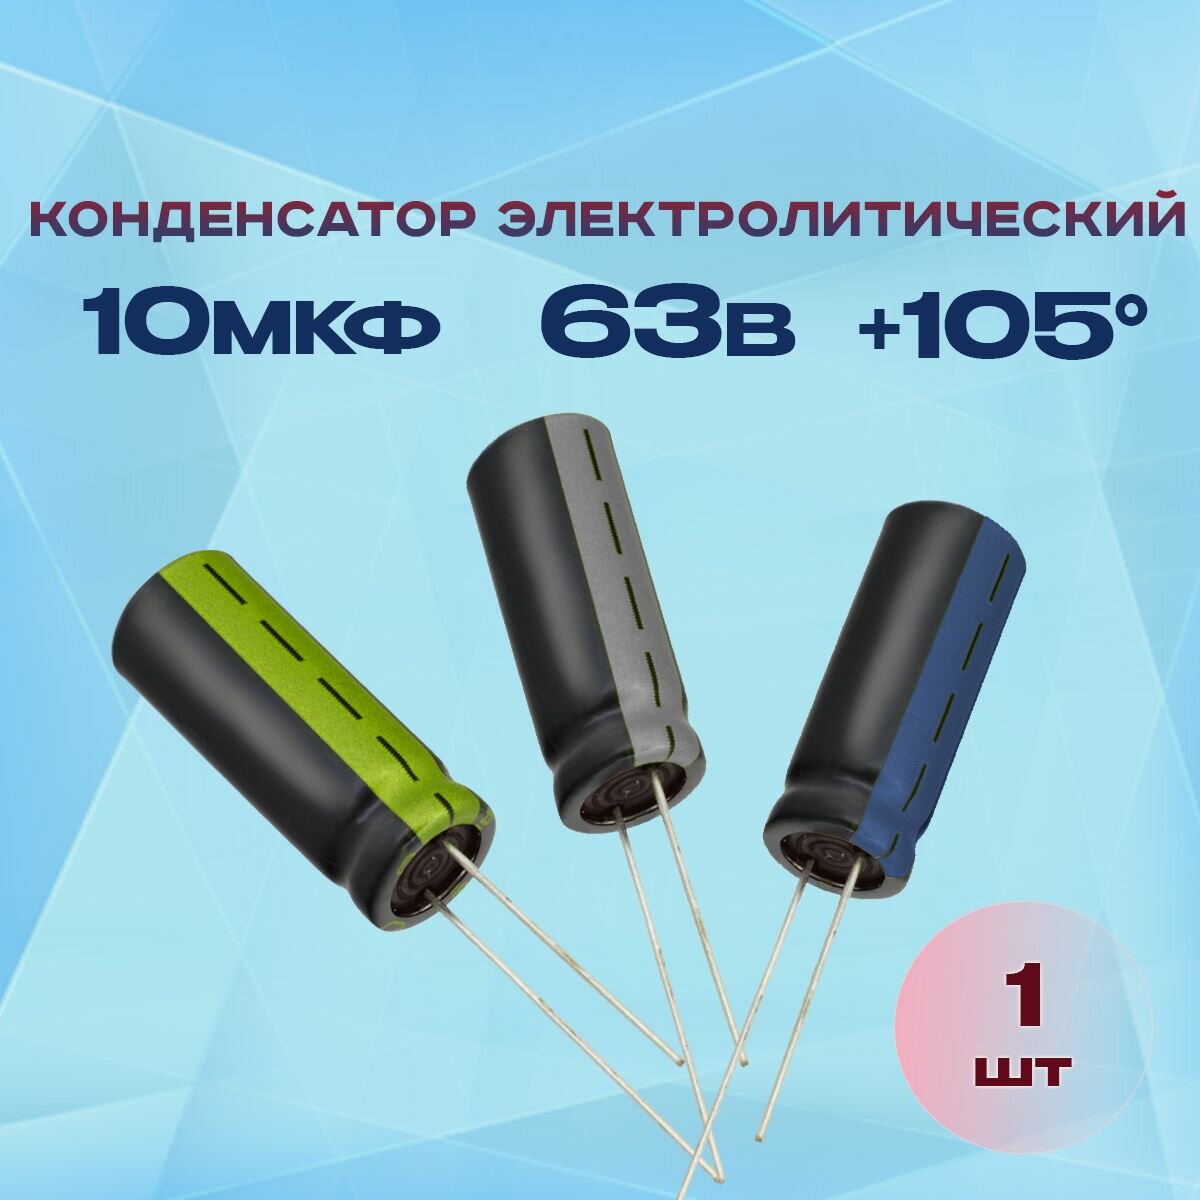 Конденсатор электролитический 10МКФХ63В +105 1 шт.